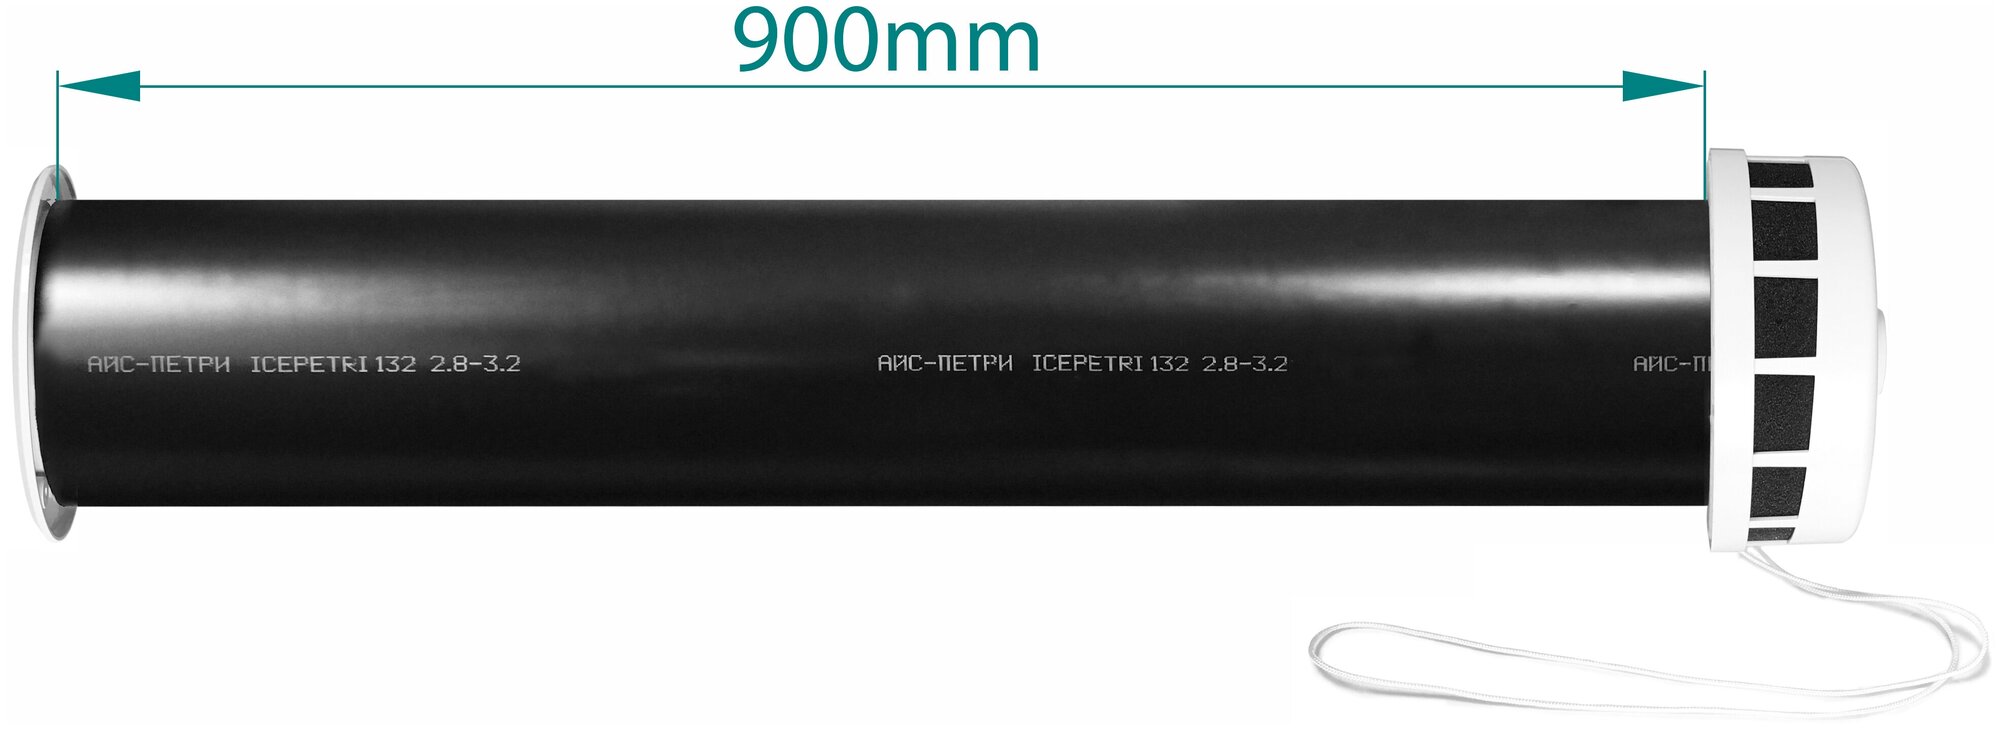 Приточный клапан КИВ-125 icepetri 900мм с ППУ и серой ASA-пластиковой решеткой - фотография № 2